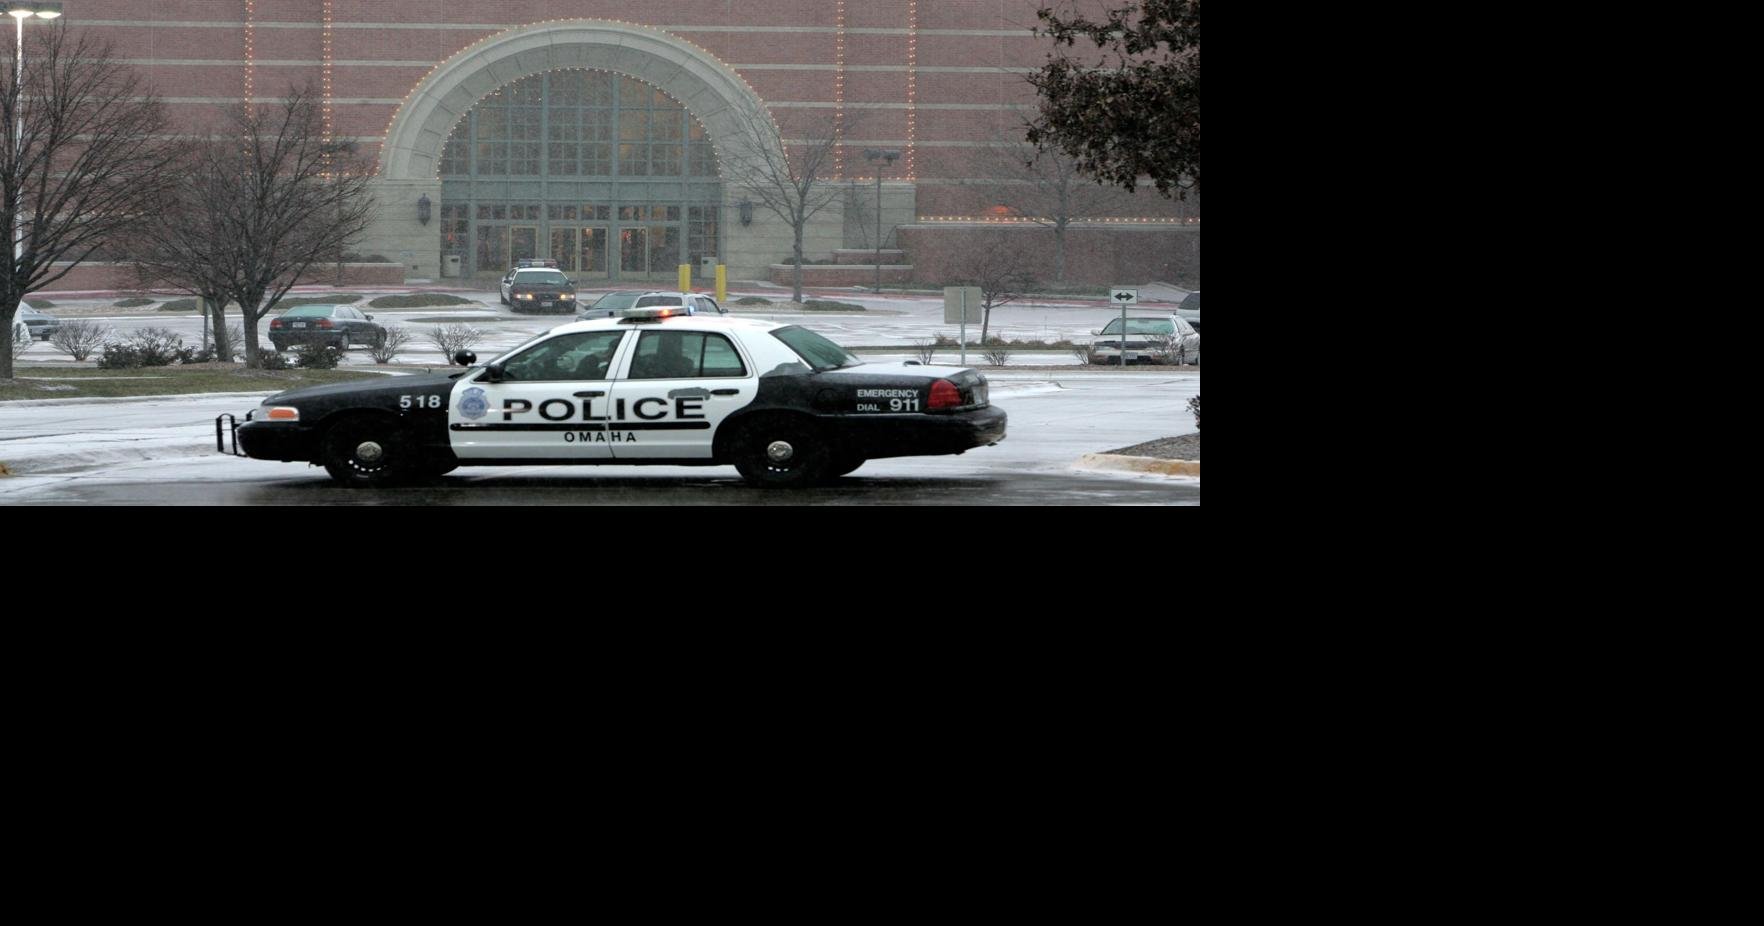 Von Maur shooting spurred focus on safety in U.S. malls